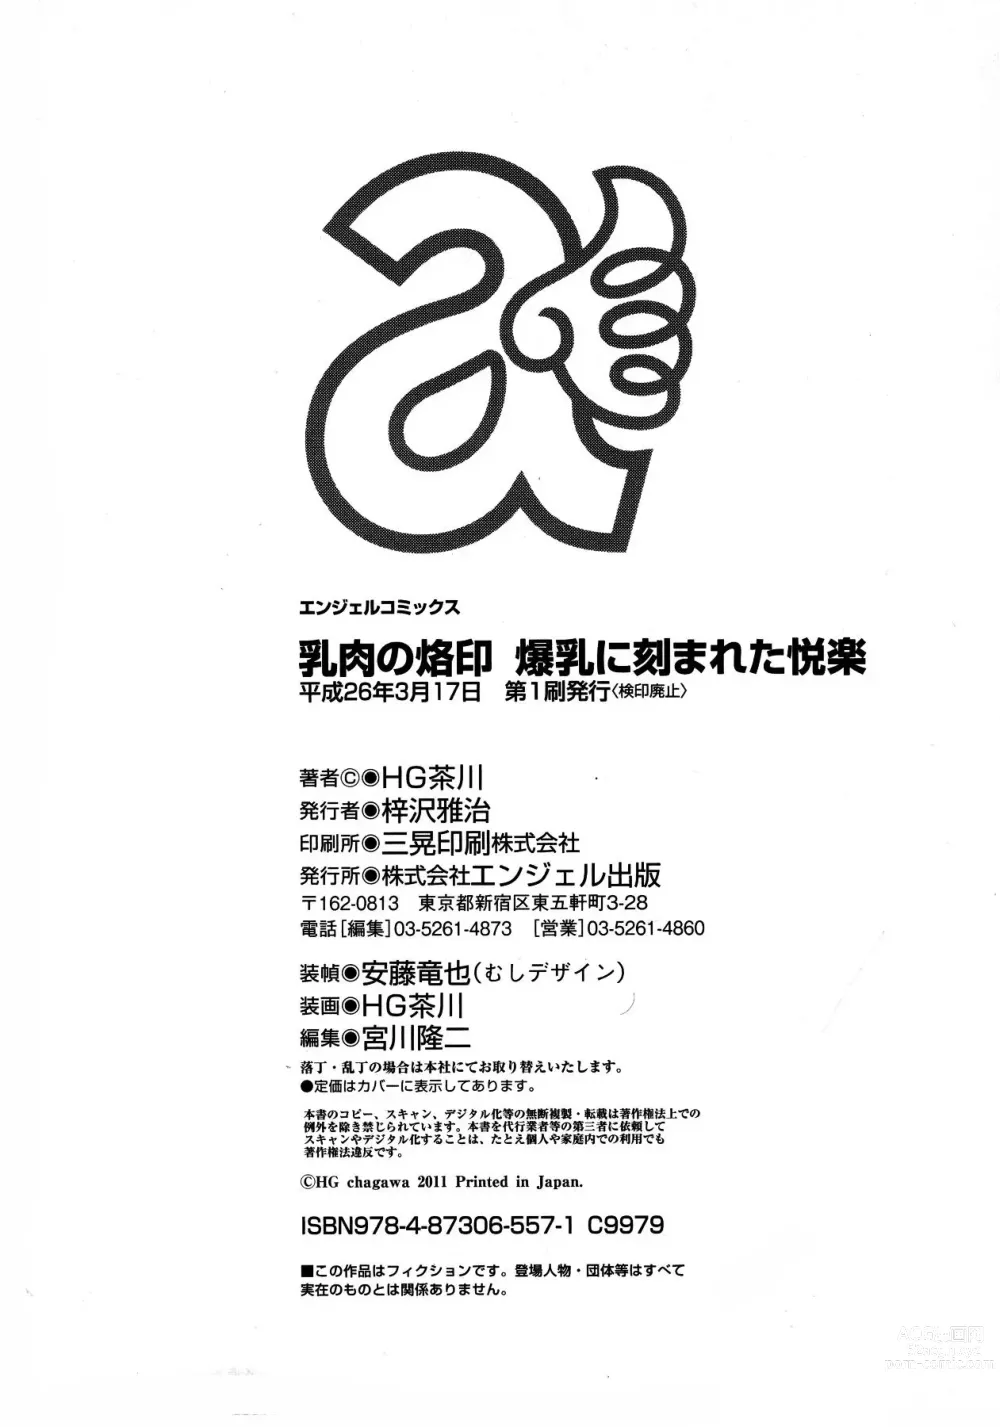 Page 169 of manga Chichiniku no Rakuin Bakunyuu ni kizamareta Etsuraku